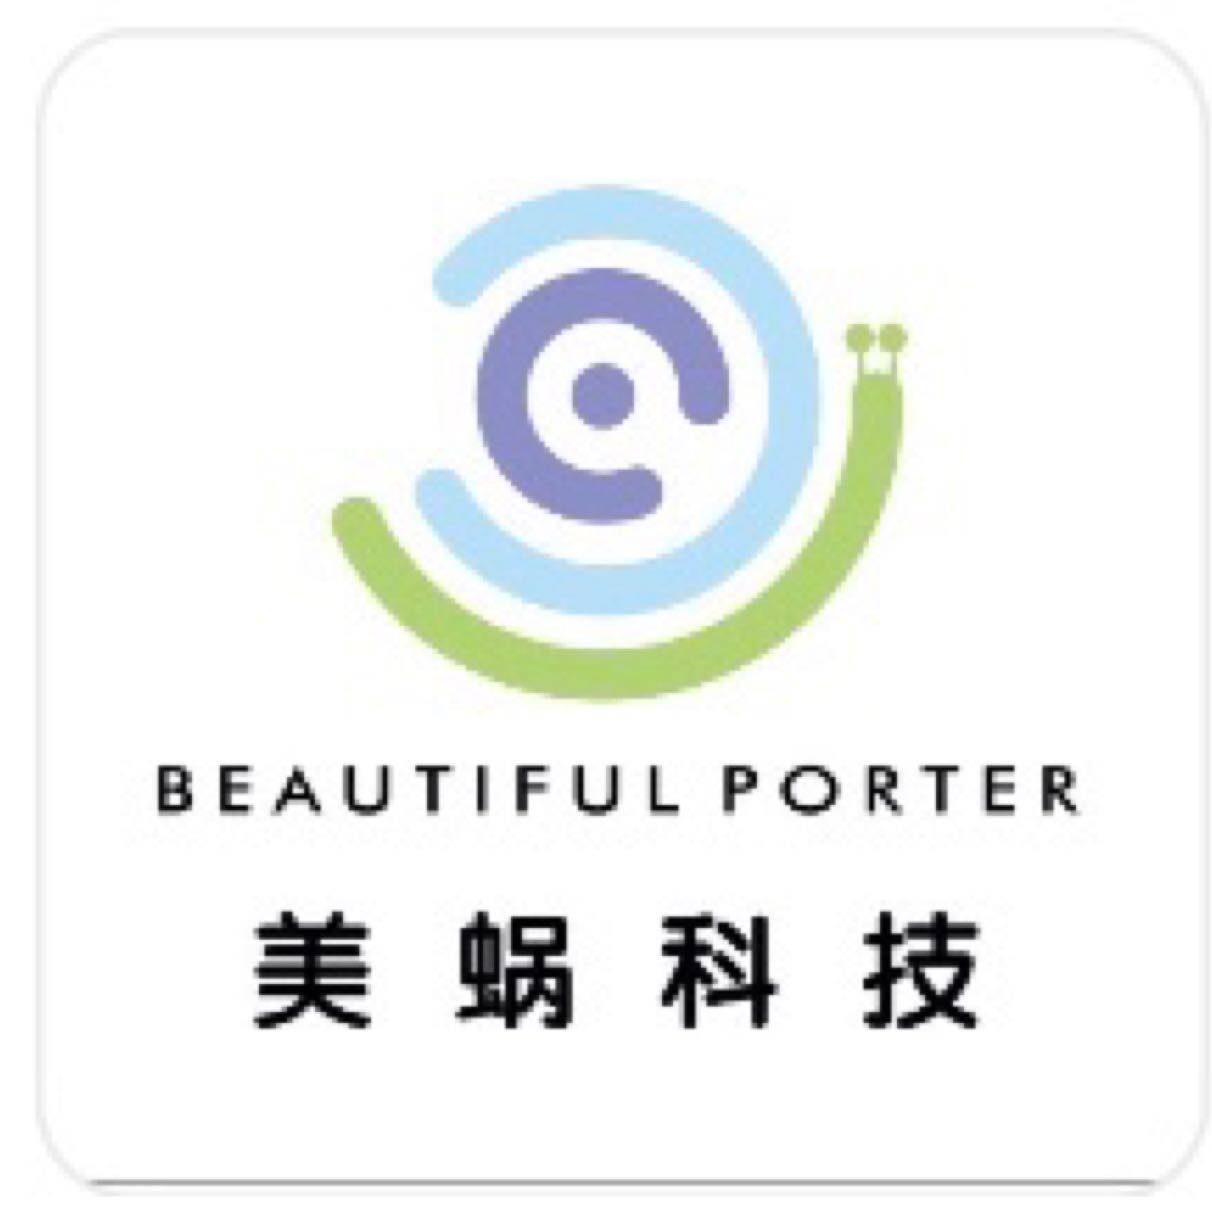 惠州市美蜗贸易发展有限公司logo